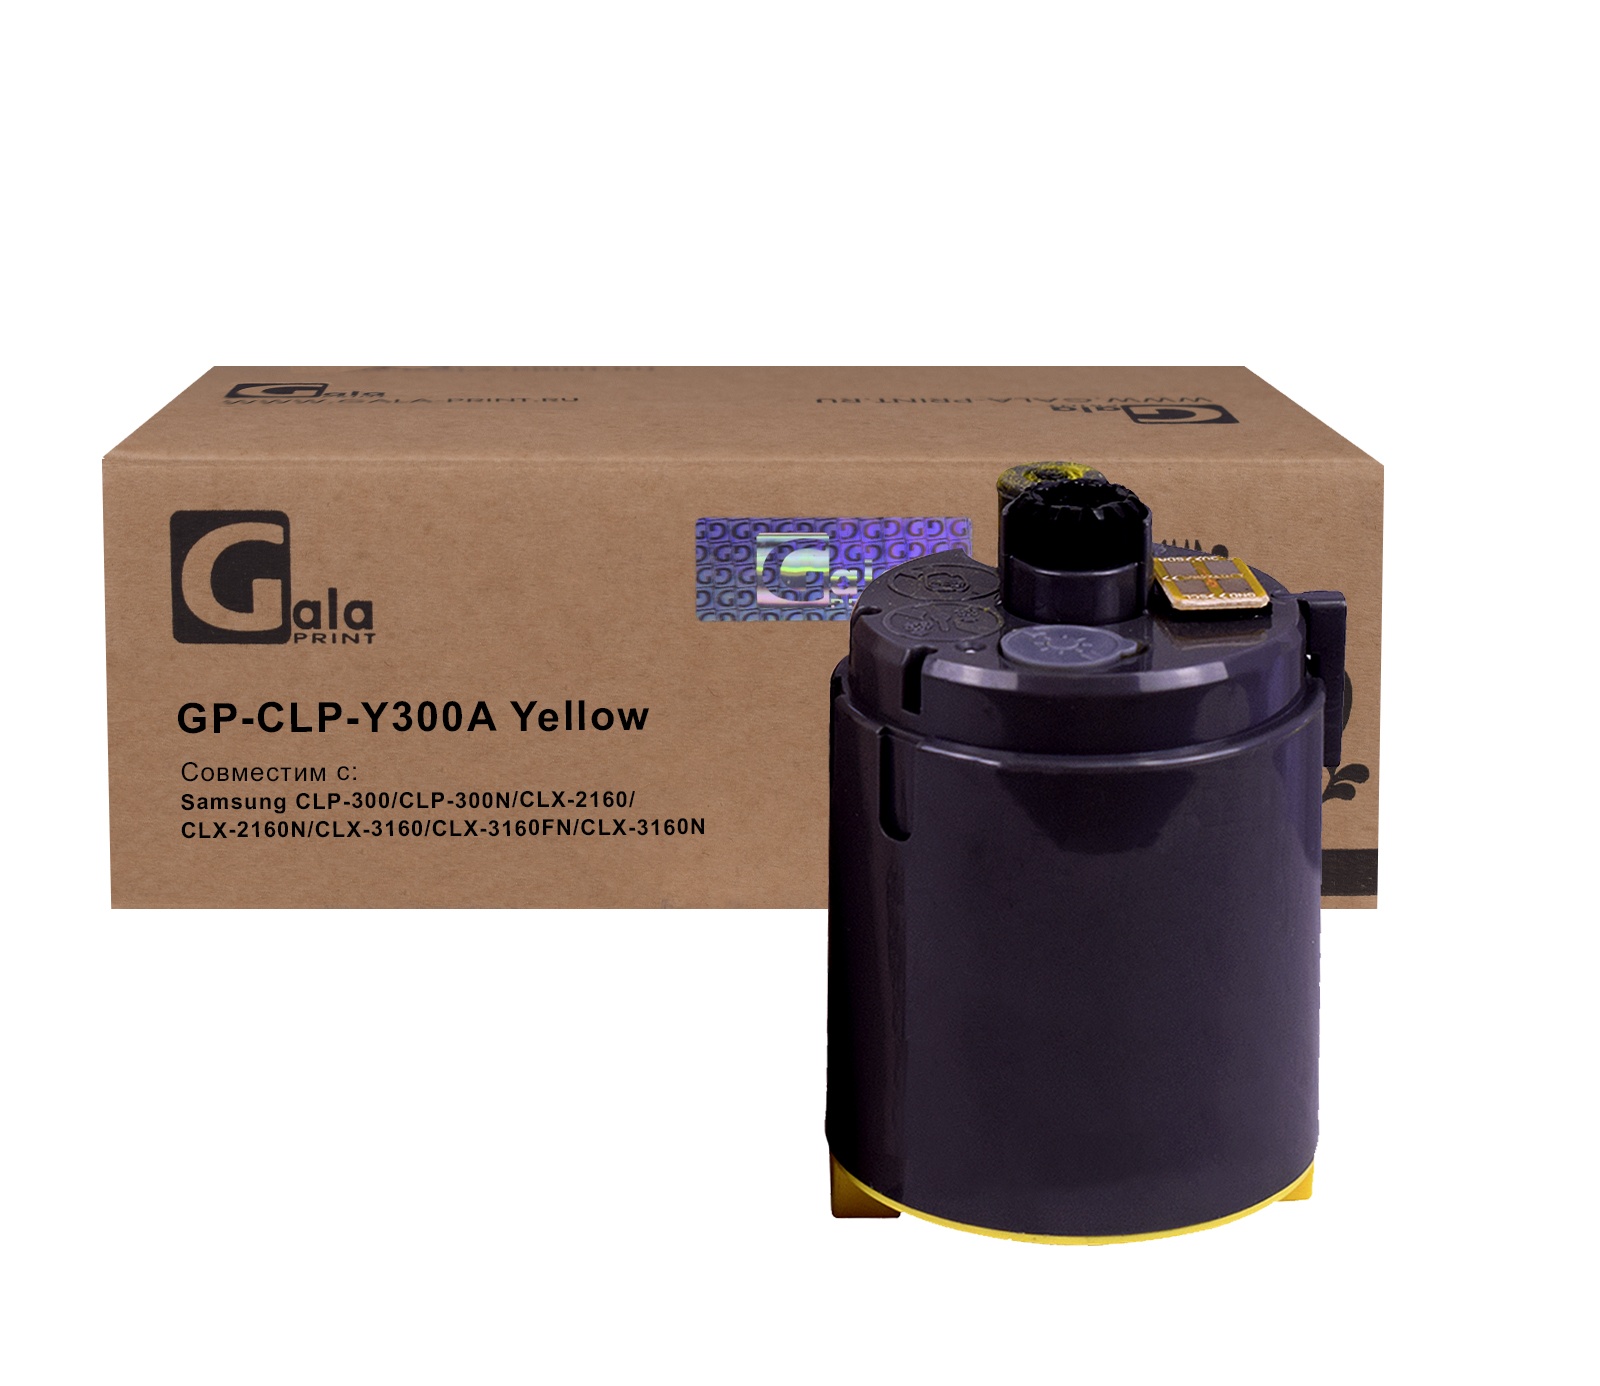 Картридж GP-CLP-Y300A для принтеров Samsung CLP-300/CLP-300N/CLX-2160/CLX-2160N/CLX-3160/CLX-3160FN/CLX-3160N Yellow 1000 копий GalaPrint